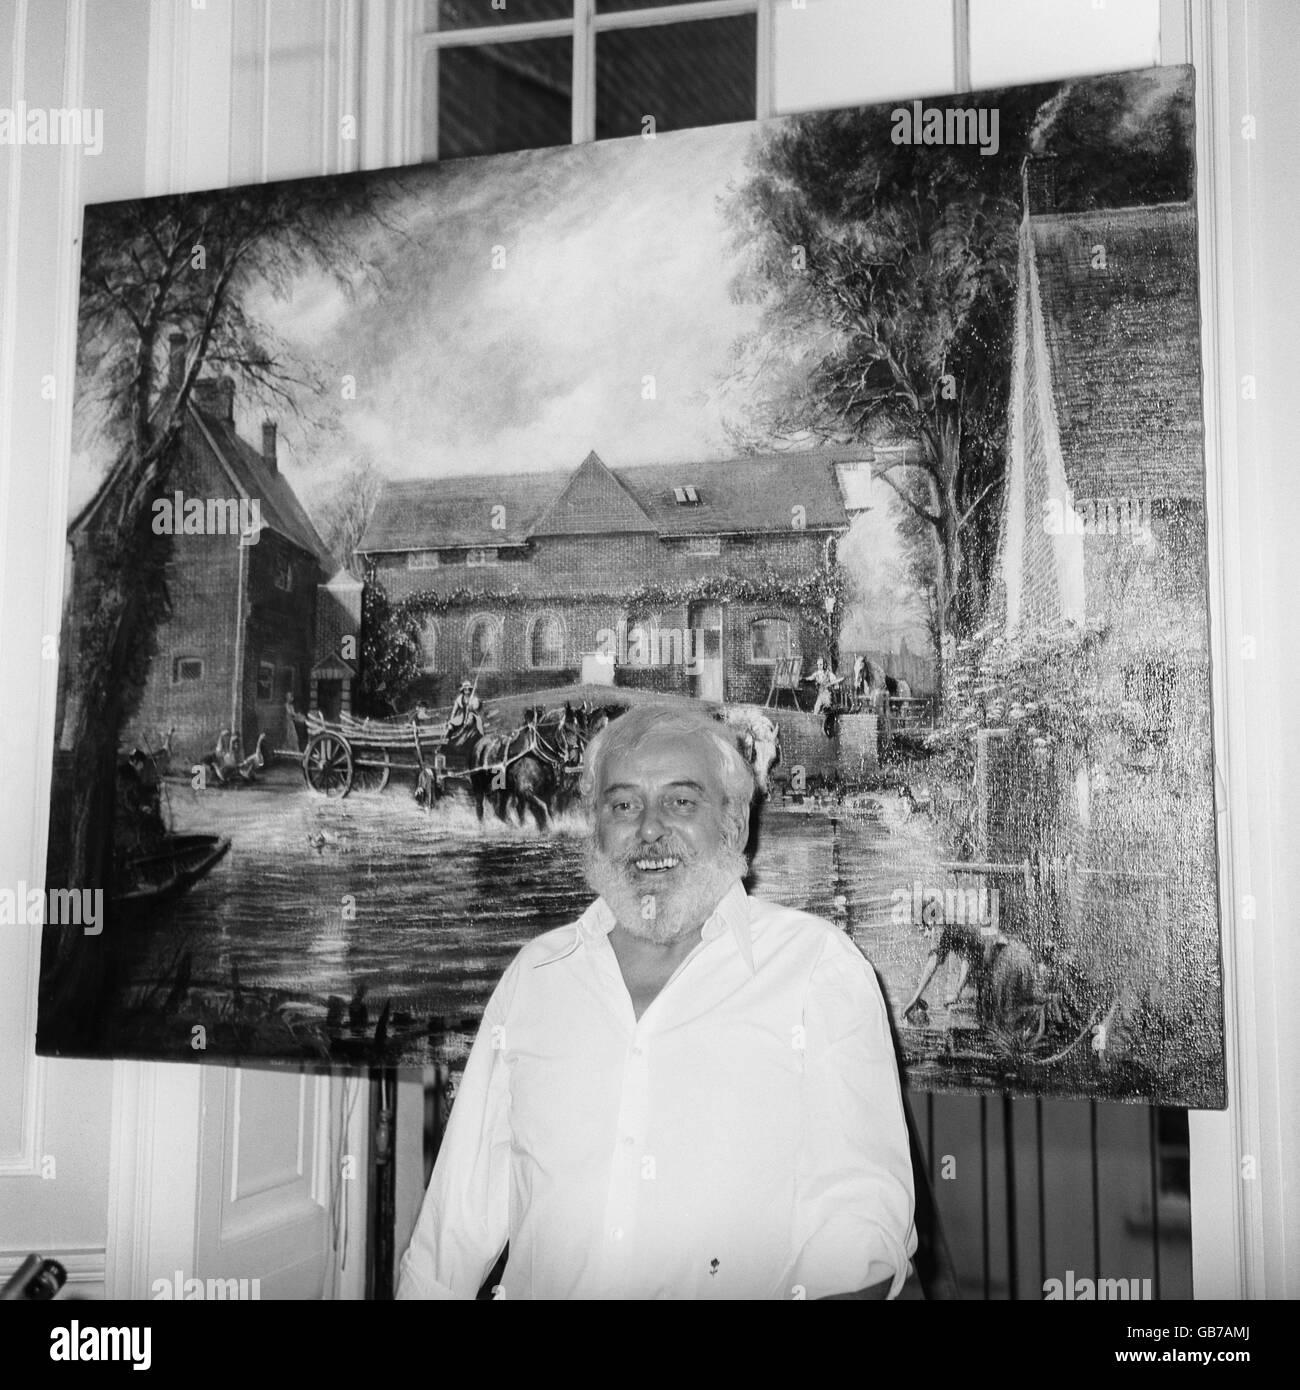 L'artista Tom Keating si trova di fronte a una delle sue opere, la sua impressione di pittura stabile 'The Haywain', in una conferenza stampa a Londra. Ha ammesso di inondare il mercato con i dipinti di imitazione come una protesta contro i 'mercants' d'arte. Foto Stock